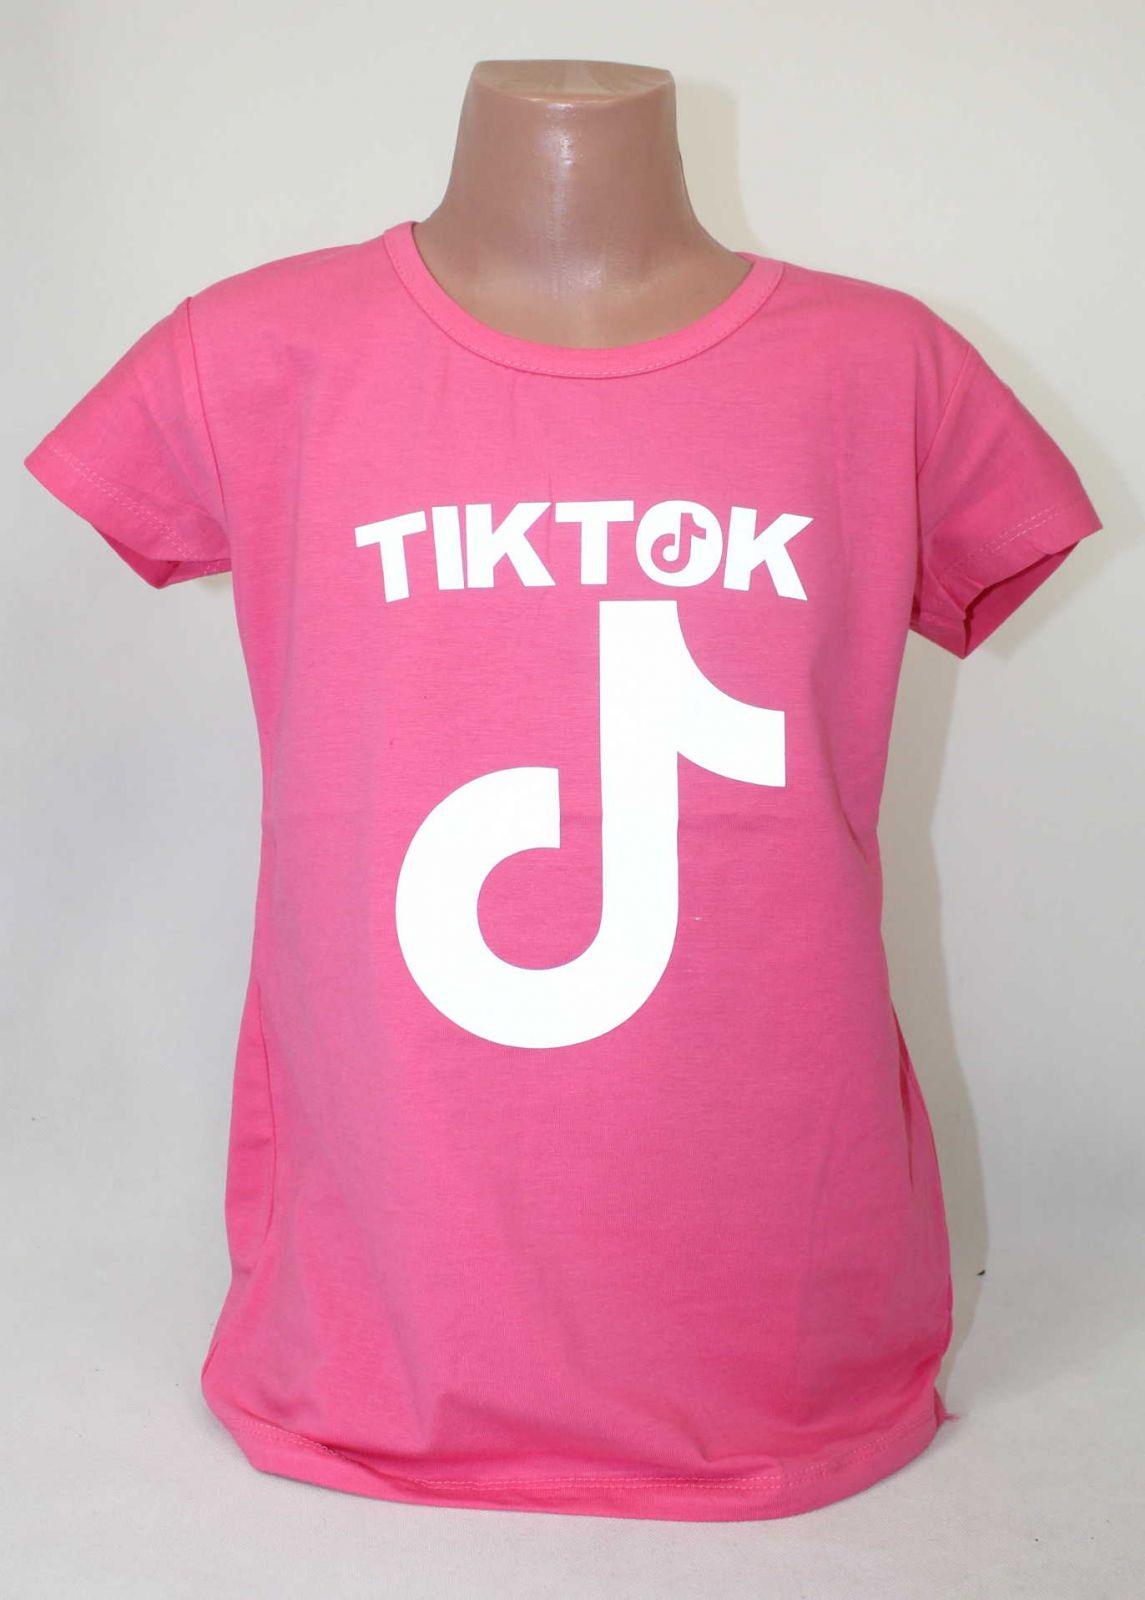 dívčí tričko Tik Tok, triko krátký rukáv Tik Tok, bavlněné tričko Tik Tok, Tik Tok oblečení, růžové tričko